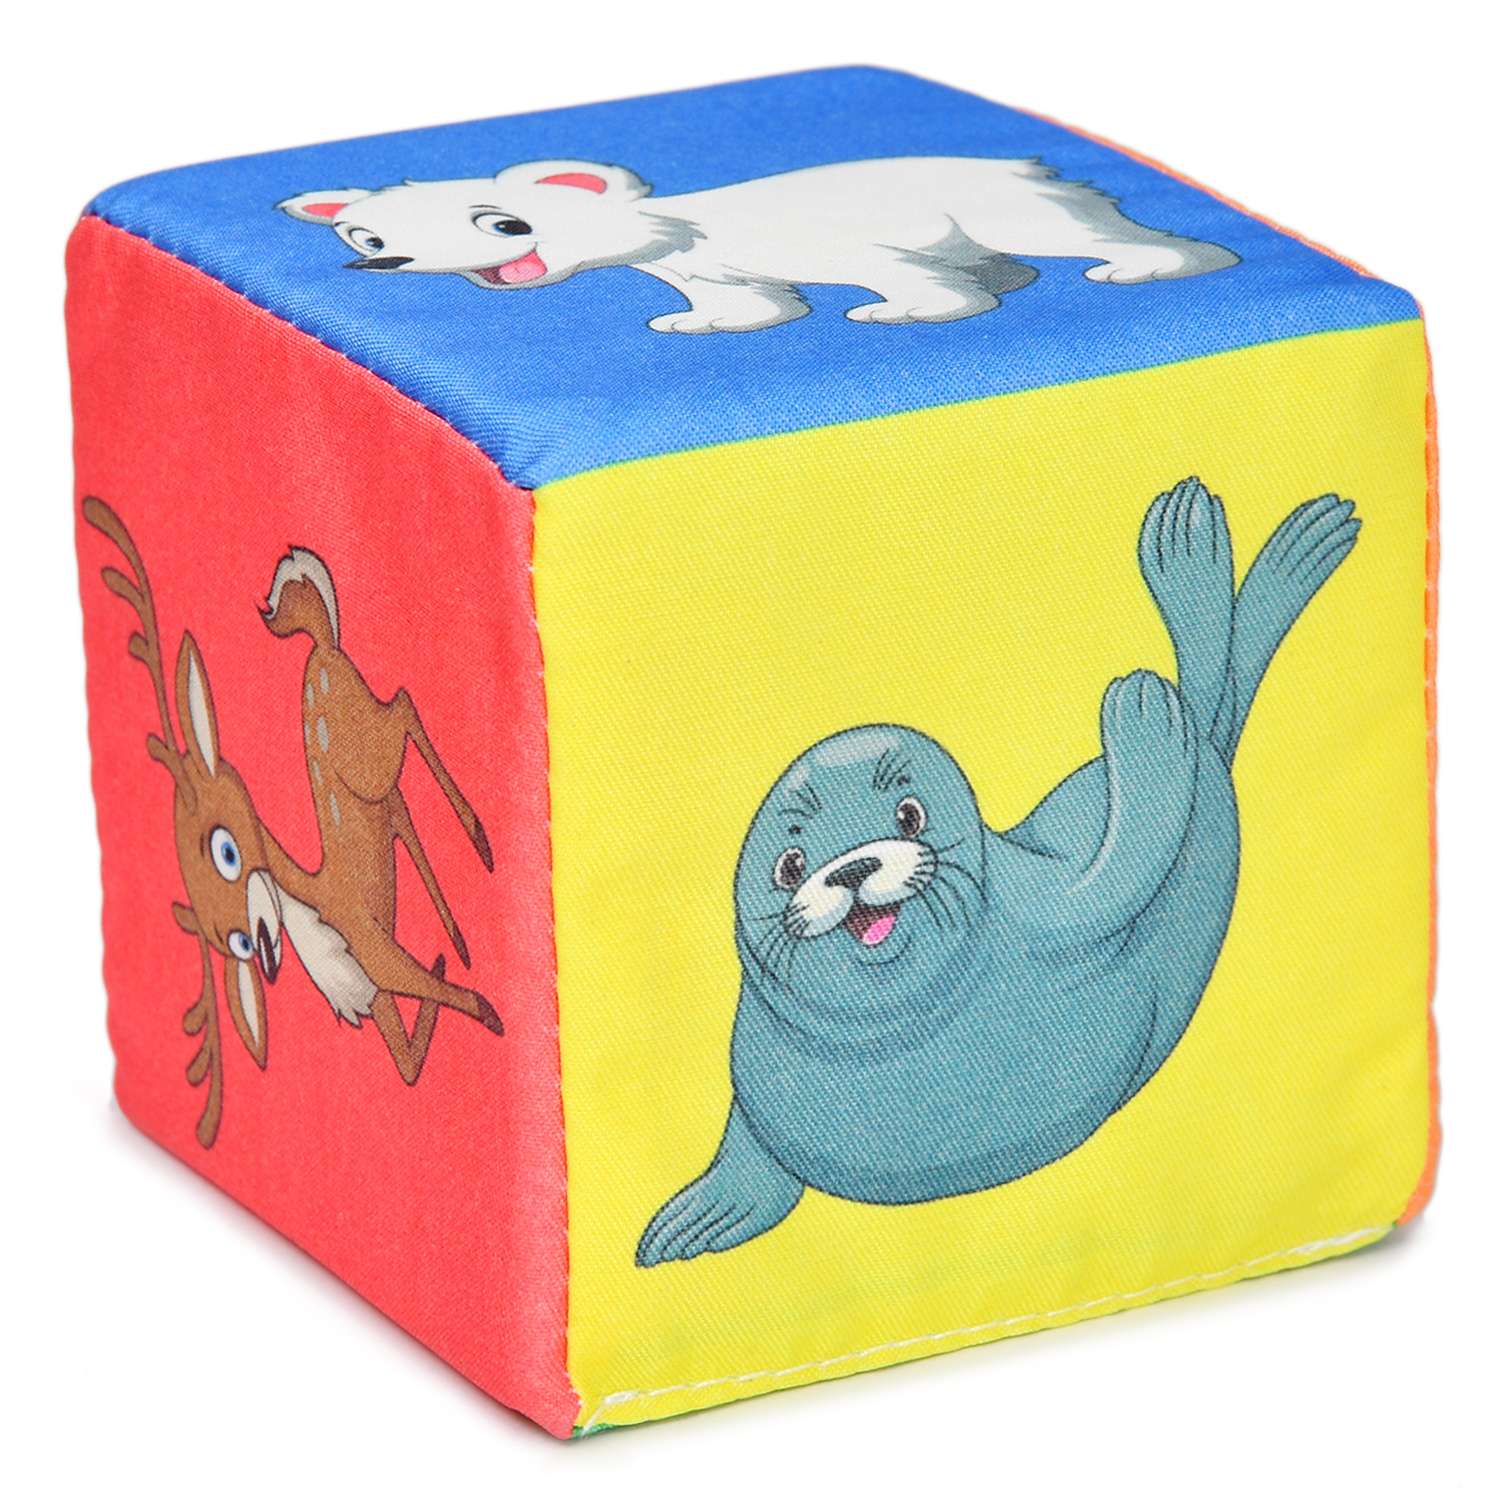 Кубики для малышей Русский стиль Веселый зоопарк 6шт Д-417-18 - фото 4